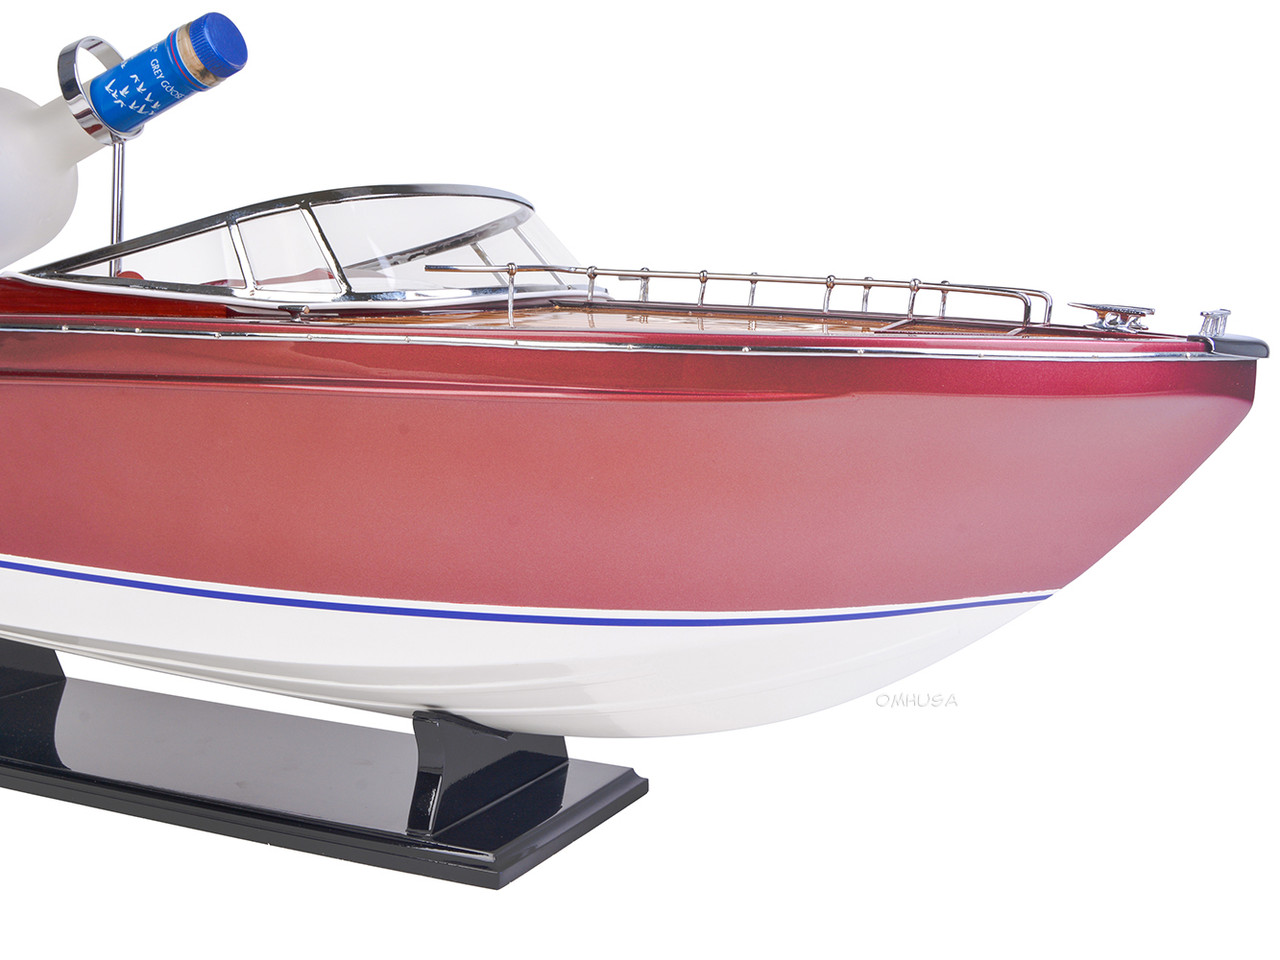 Riva Rivarama Wine Holder Speed Boat Model Italian Yacht